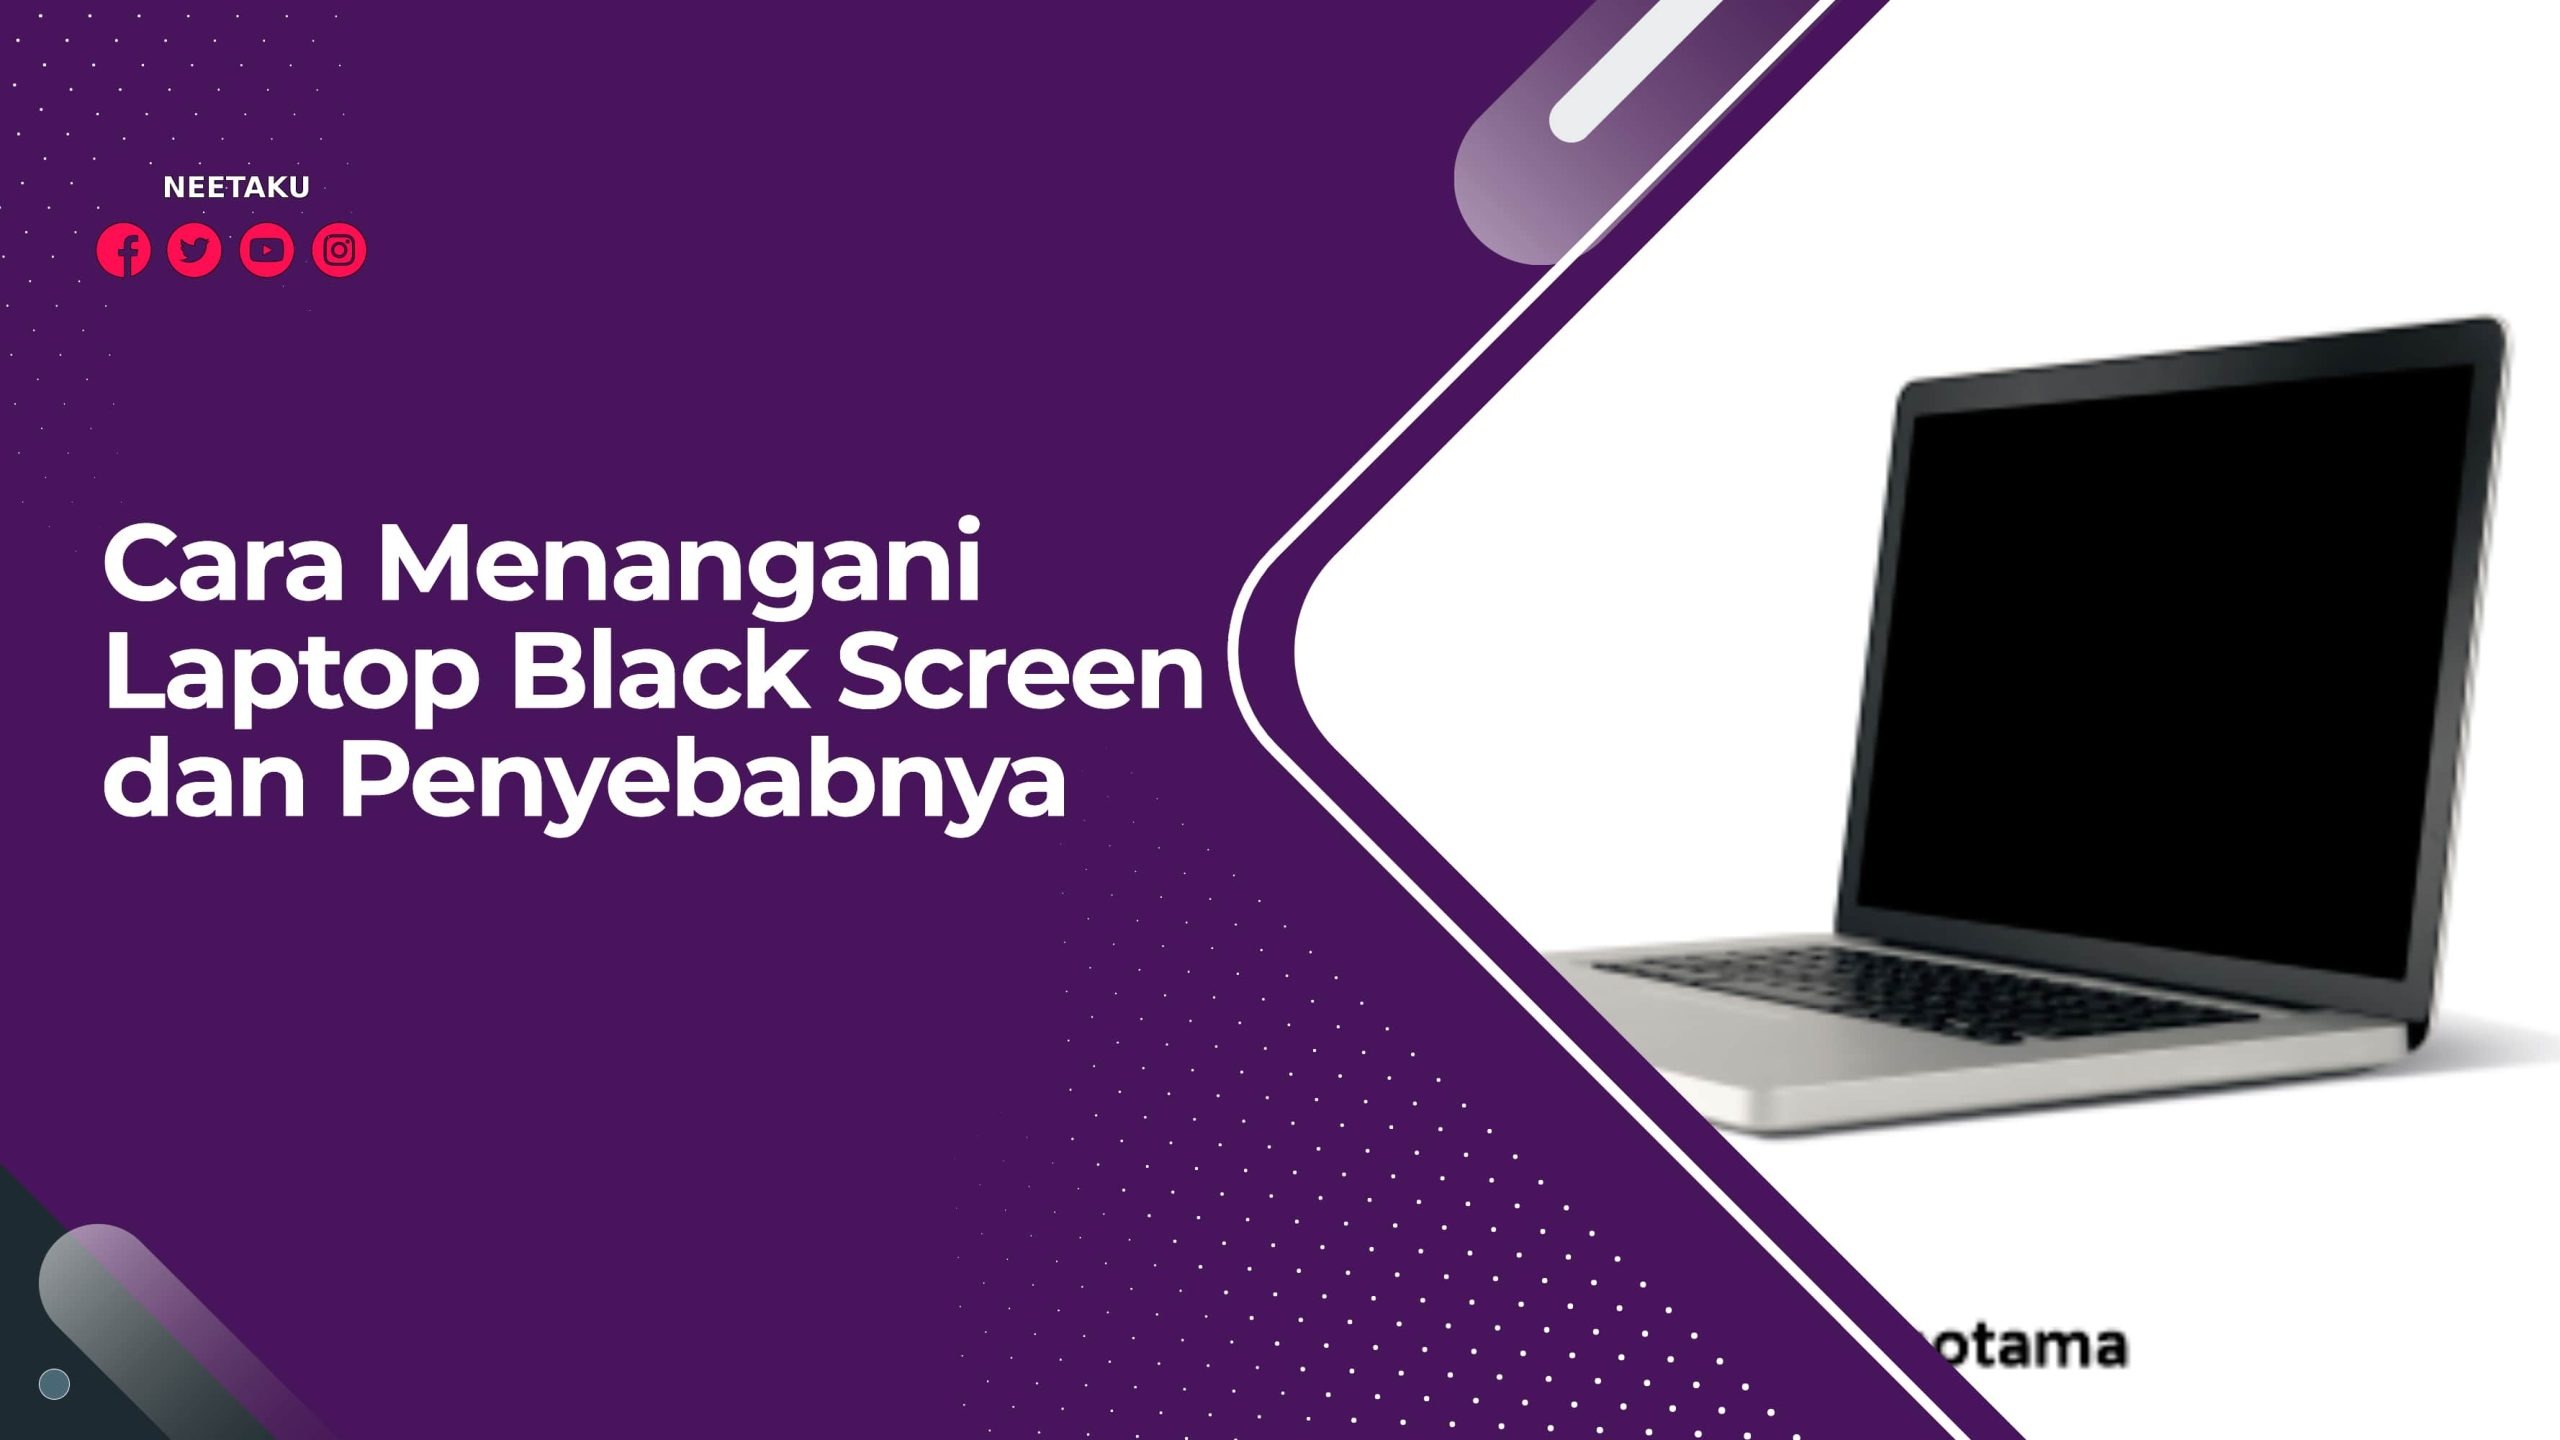 Cara Menangani Laptop Black Screen dan Penyebabnya